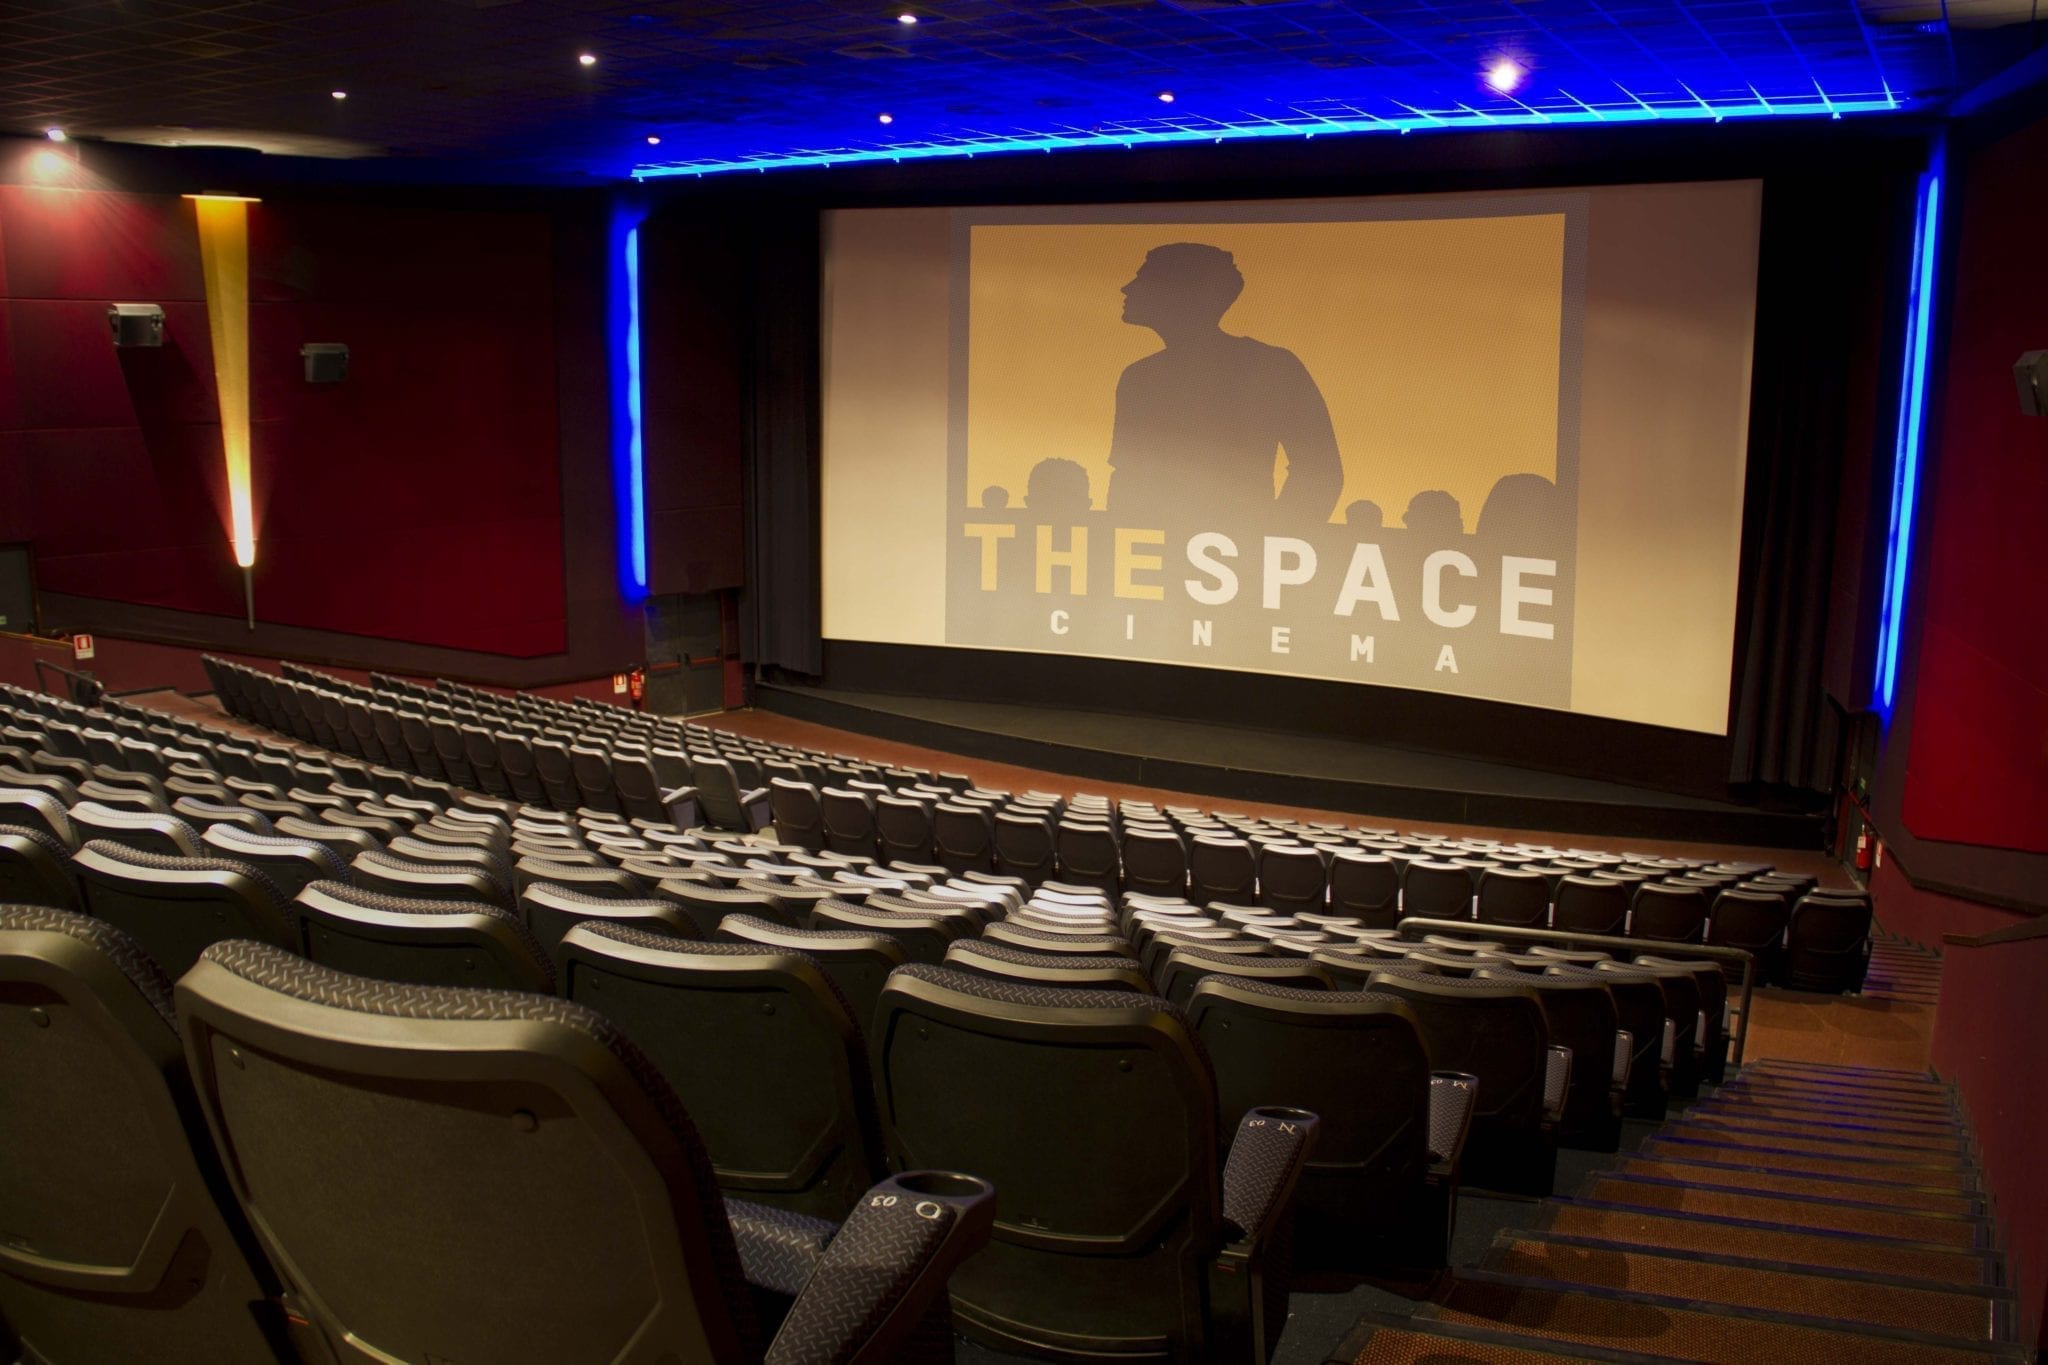 A Rozzano la festa di The Space Cinema per celebrare un decennio di attività e rafforzare il legame con il pubblico